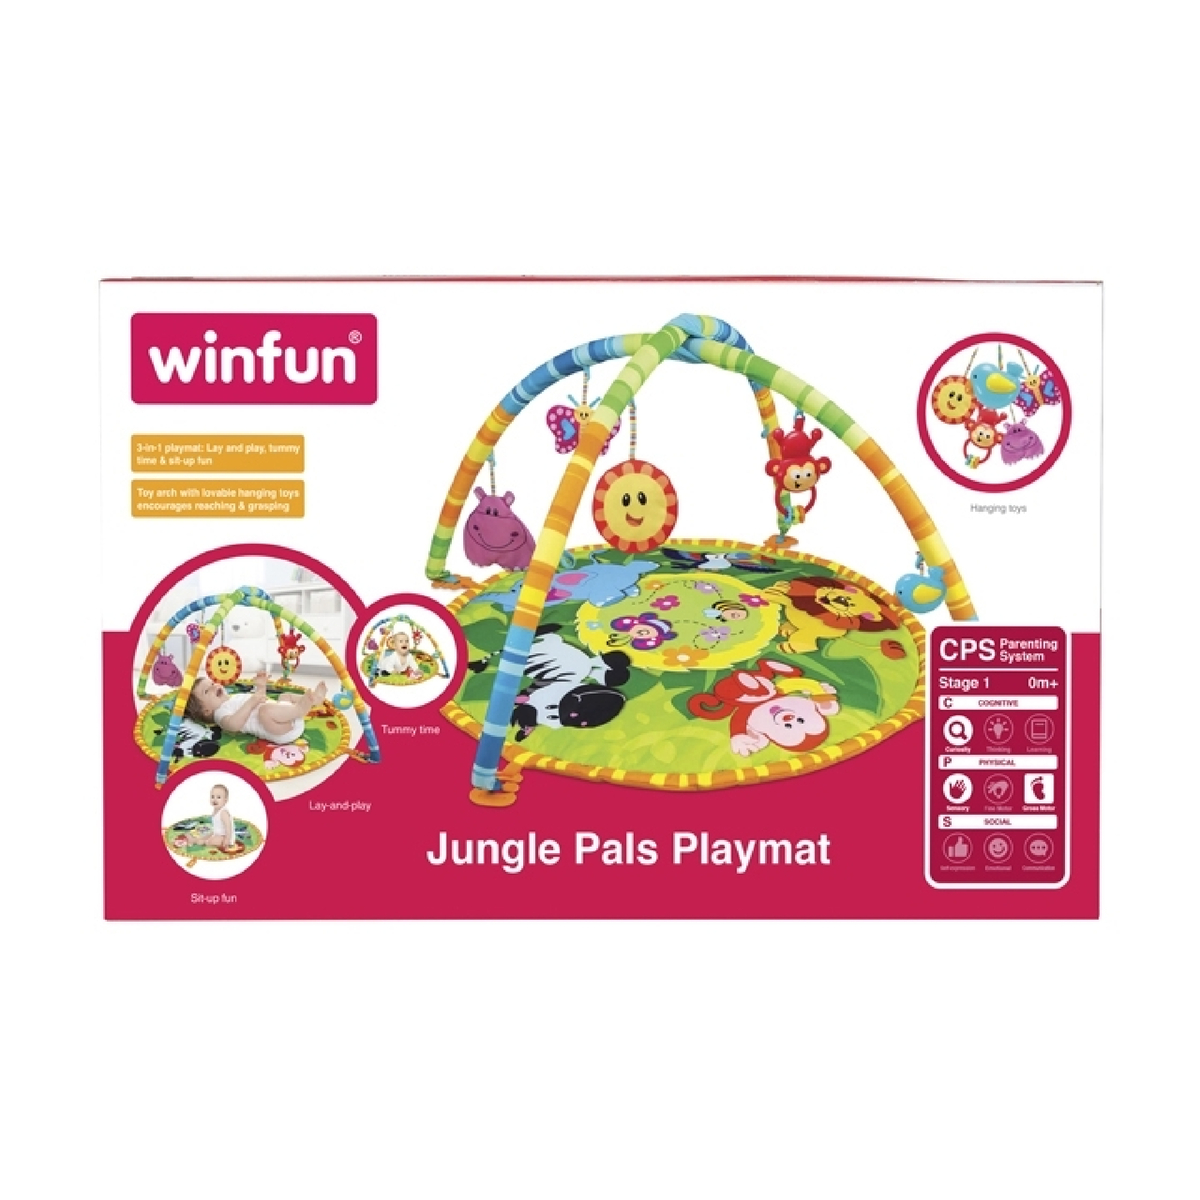 Winfun Jungle Pals Playmat, 000827